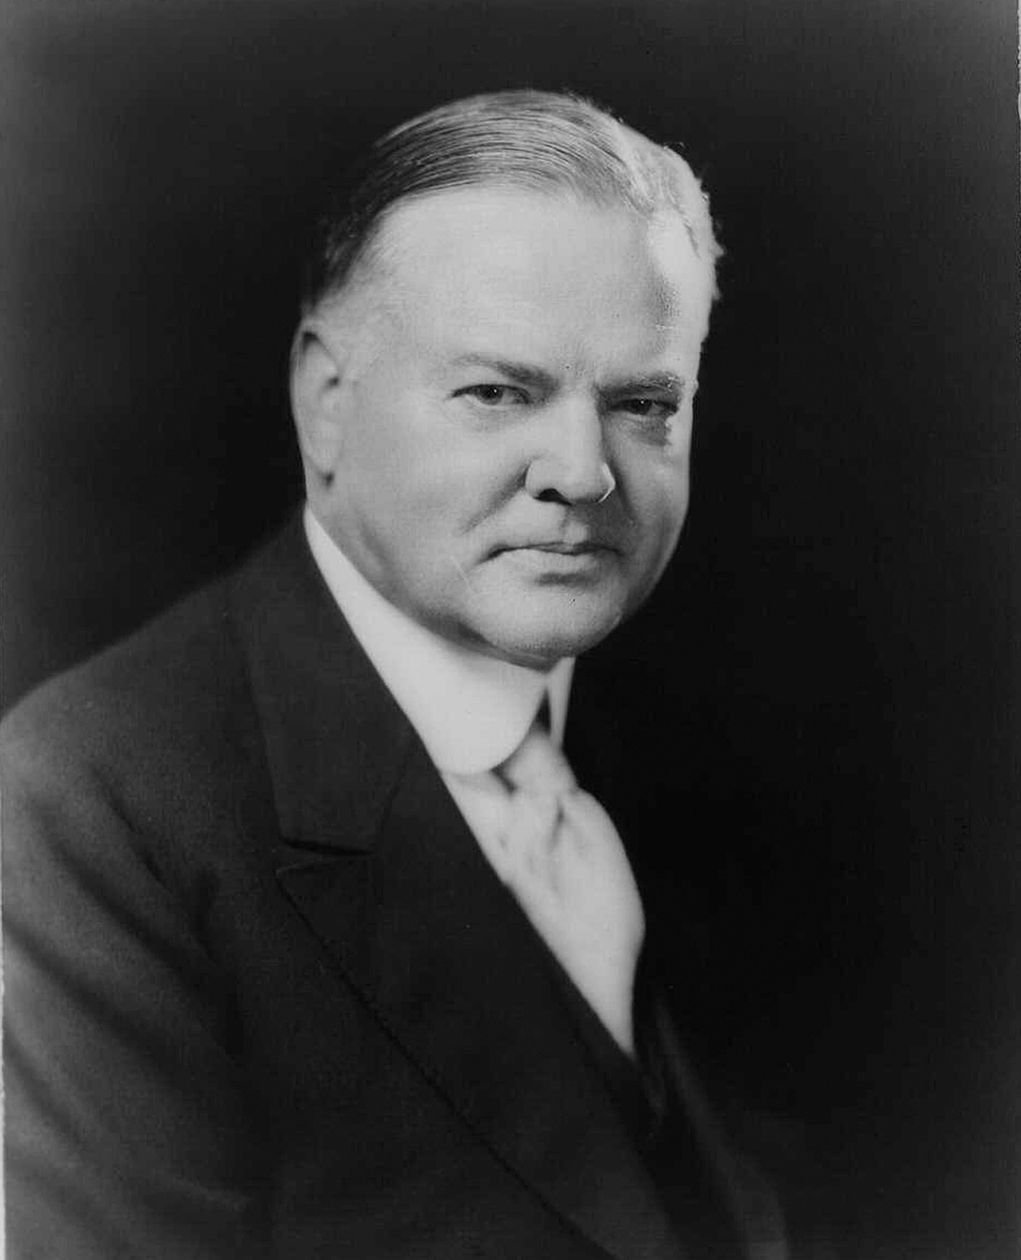 Herbert Hoover (No. 31) - IQ 141.6